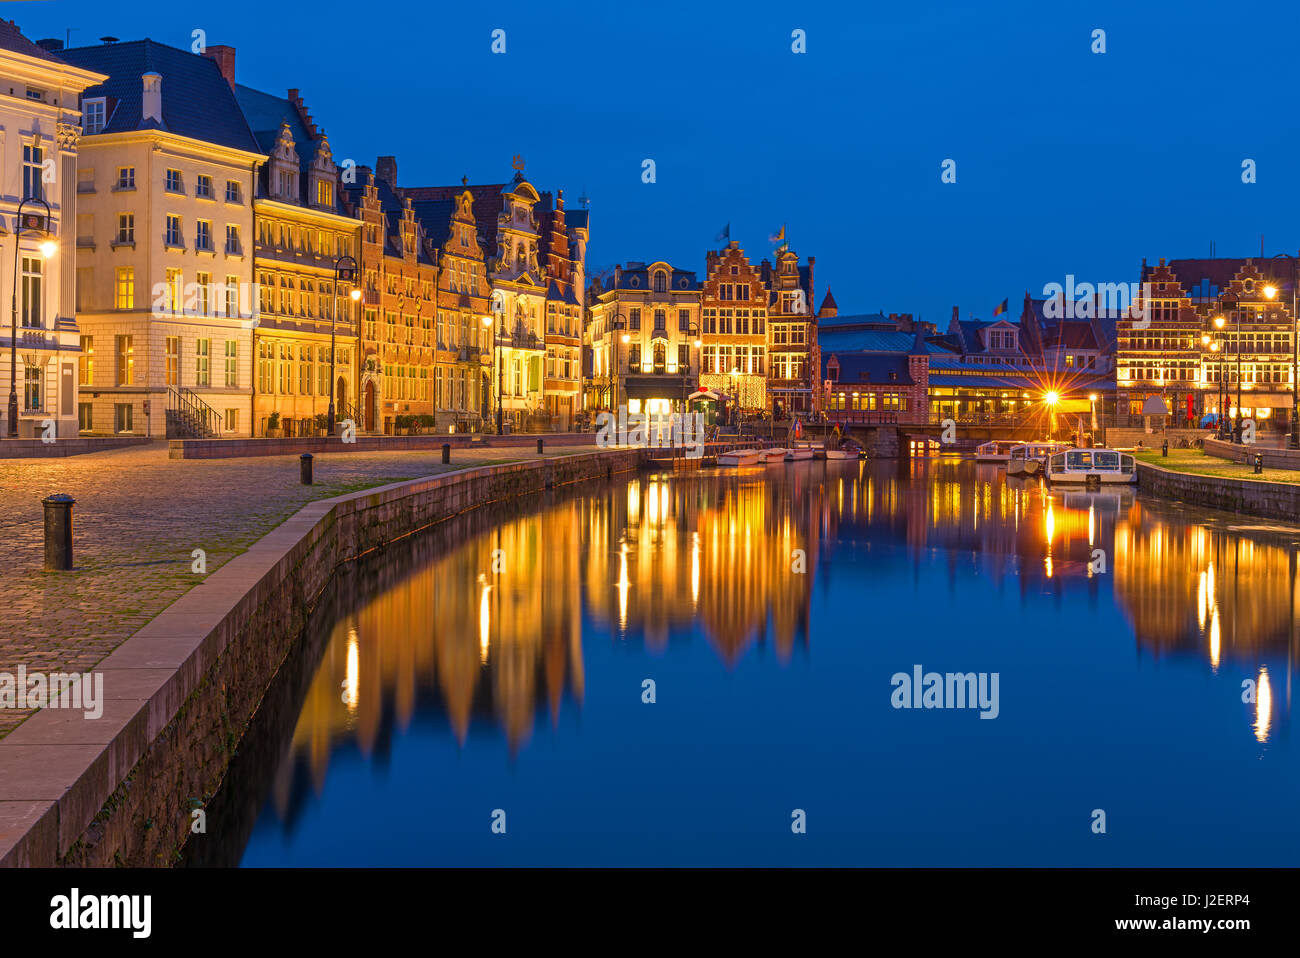 Il centro storico della città di Gand durante il tramonto con la sua architettura medievale e le case delle corporazioni e il fiume Leie, Belgio Foto Stock